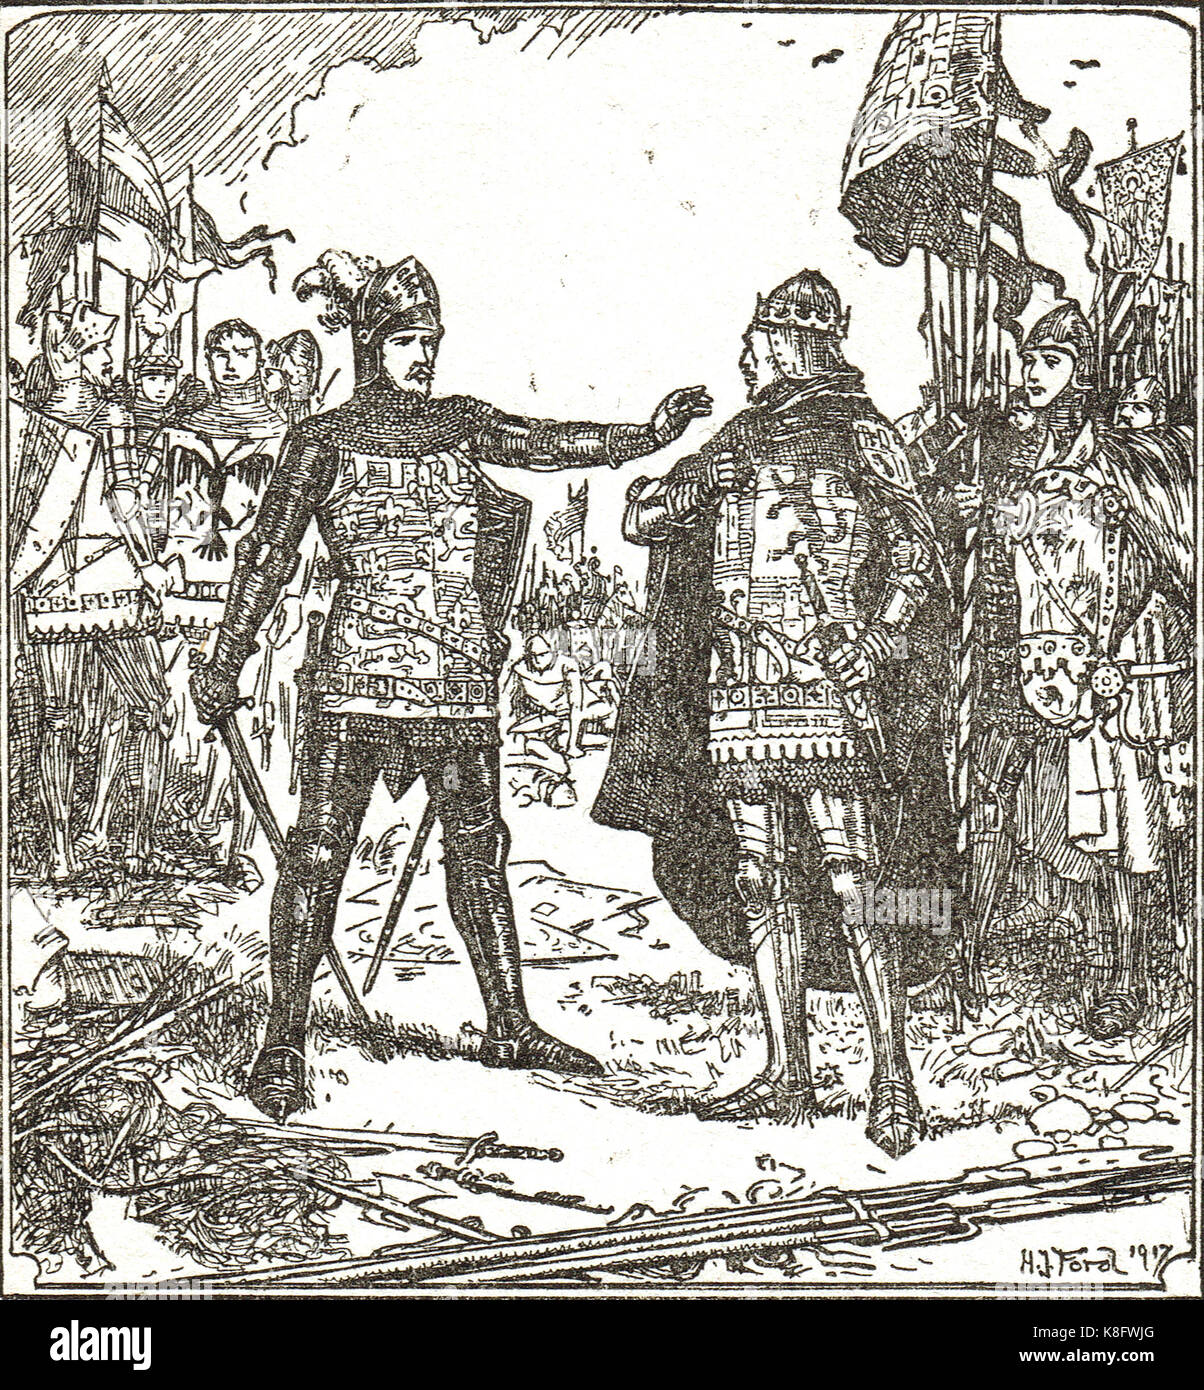 Le Prince Noir, Edward de Woodstock, refuse de remettre le Guesclin à Don Pedro, bataille de Nájera, 3 avril 1367, Guerre civile castillane Banque D'Images